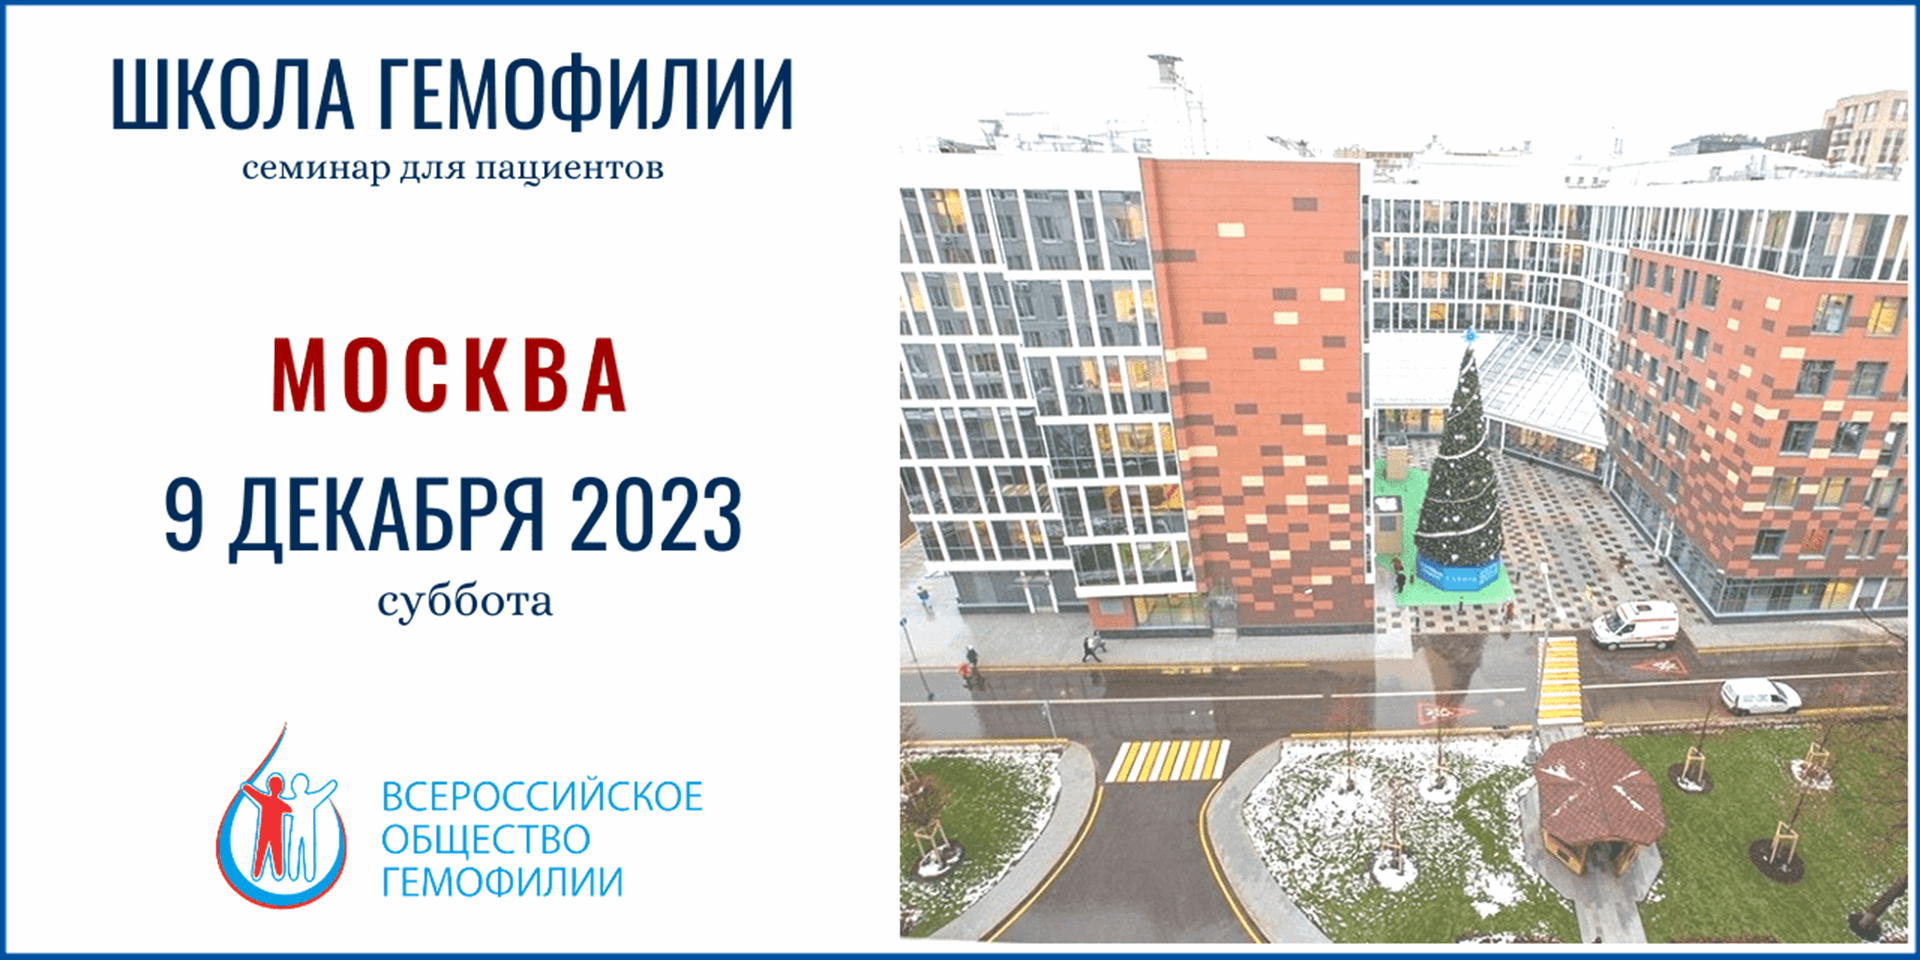 Анонс! Школа гемофилии в Москве запланирована на 9 декабря 2023